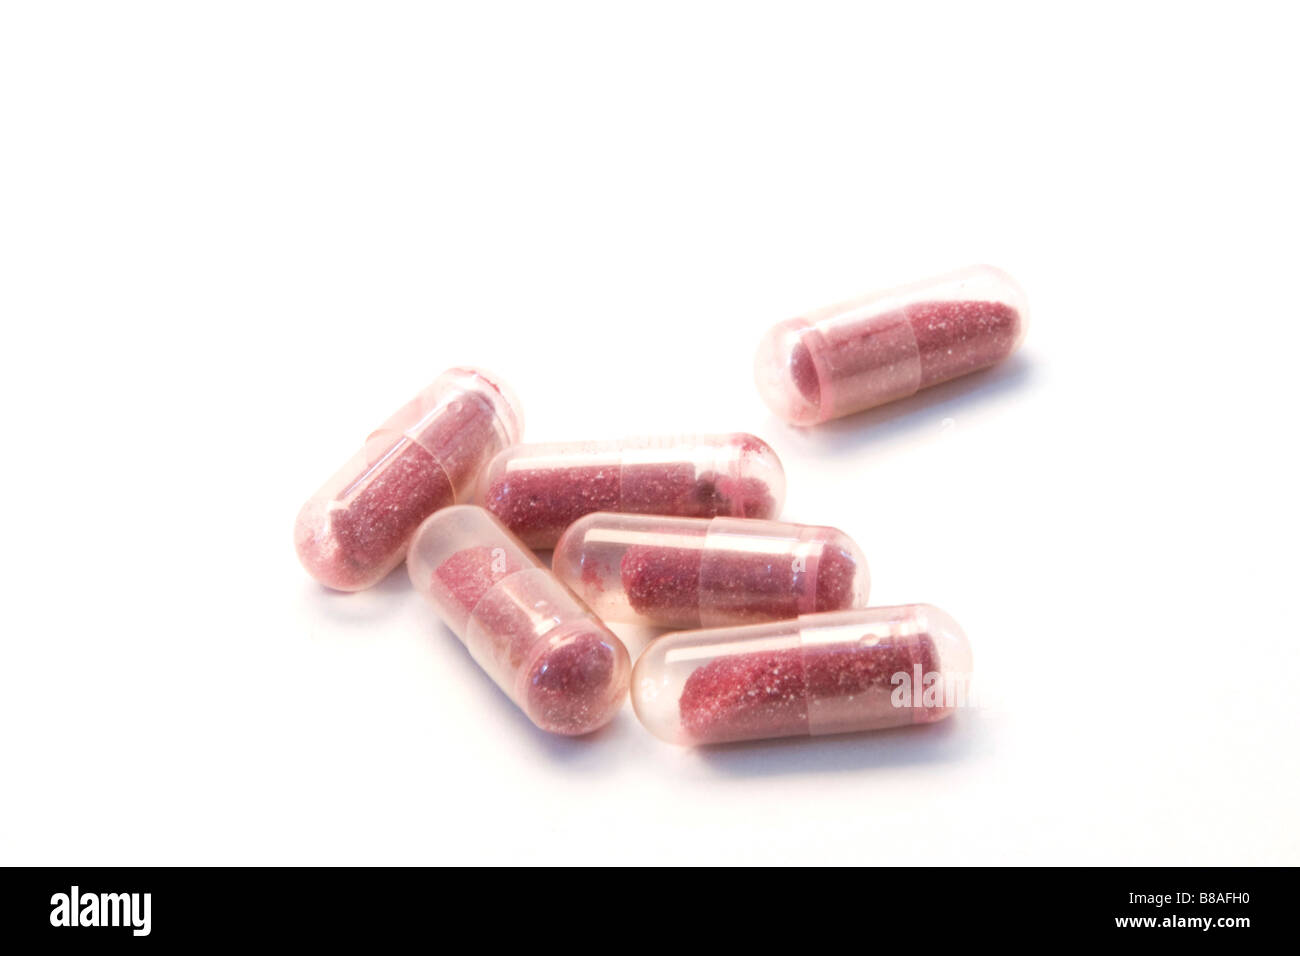 Pillole di mirtillo palustre sono visti in un ritaglio immagine. Foto Stock